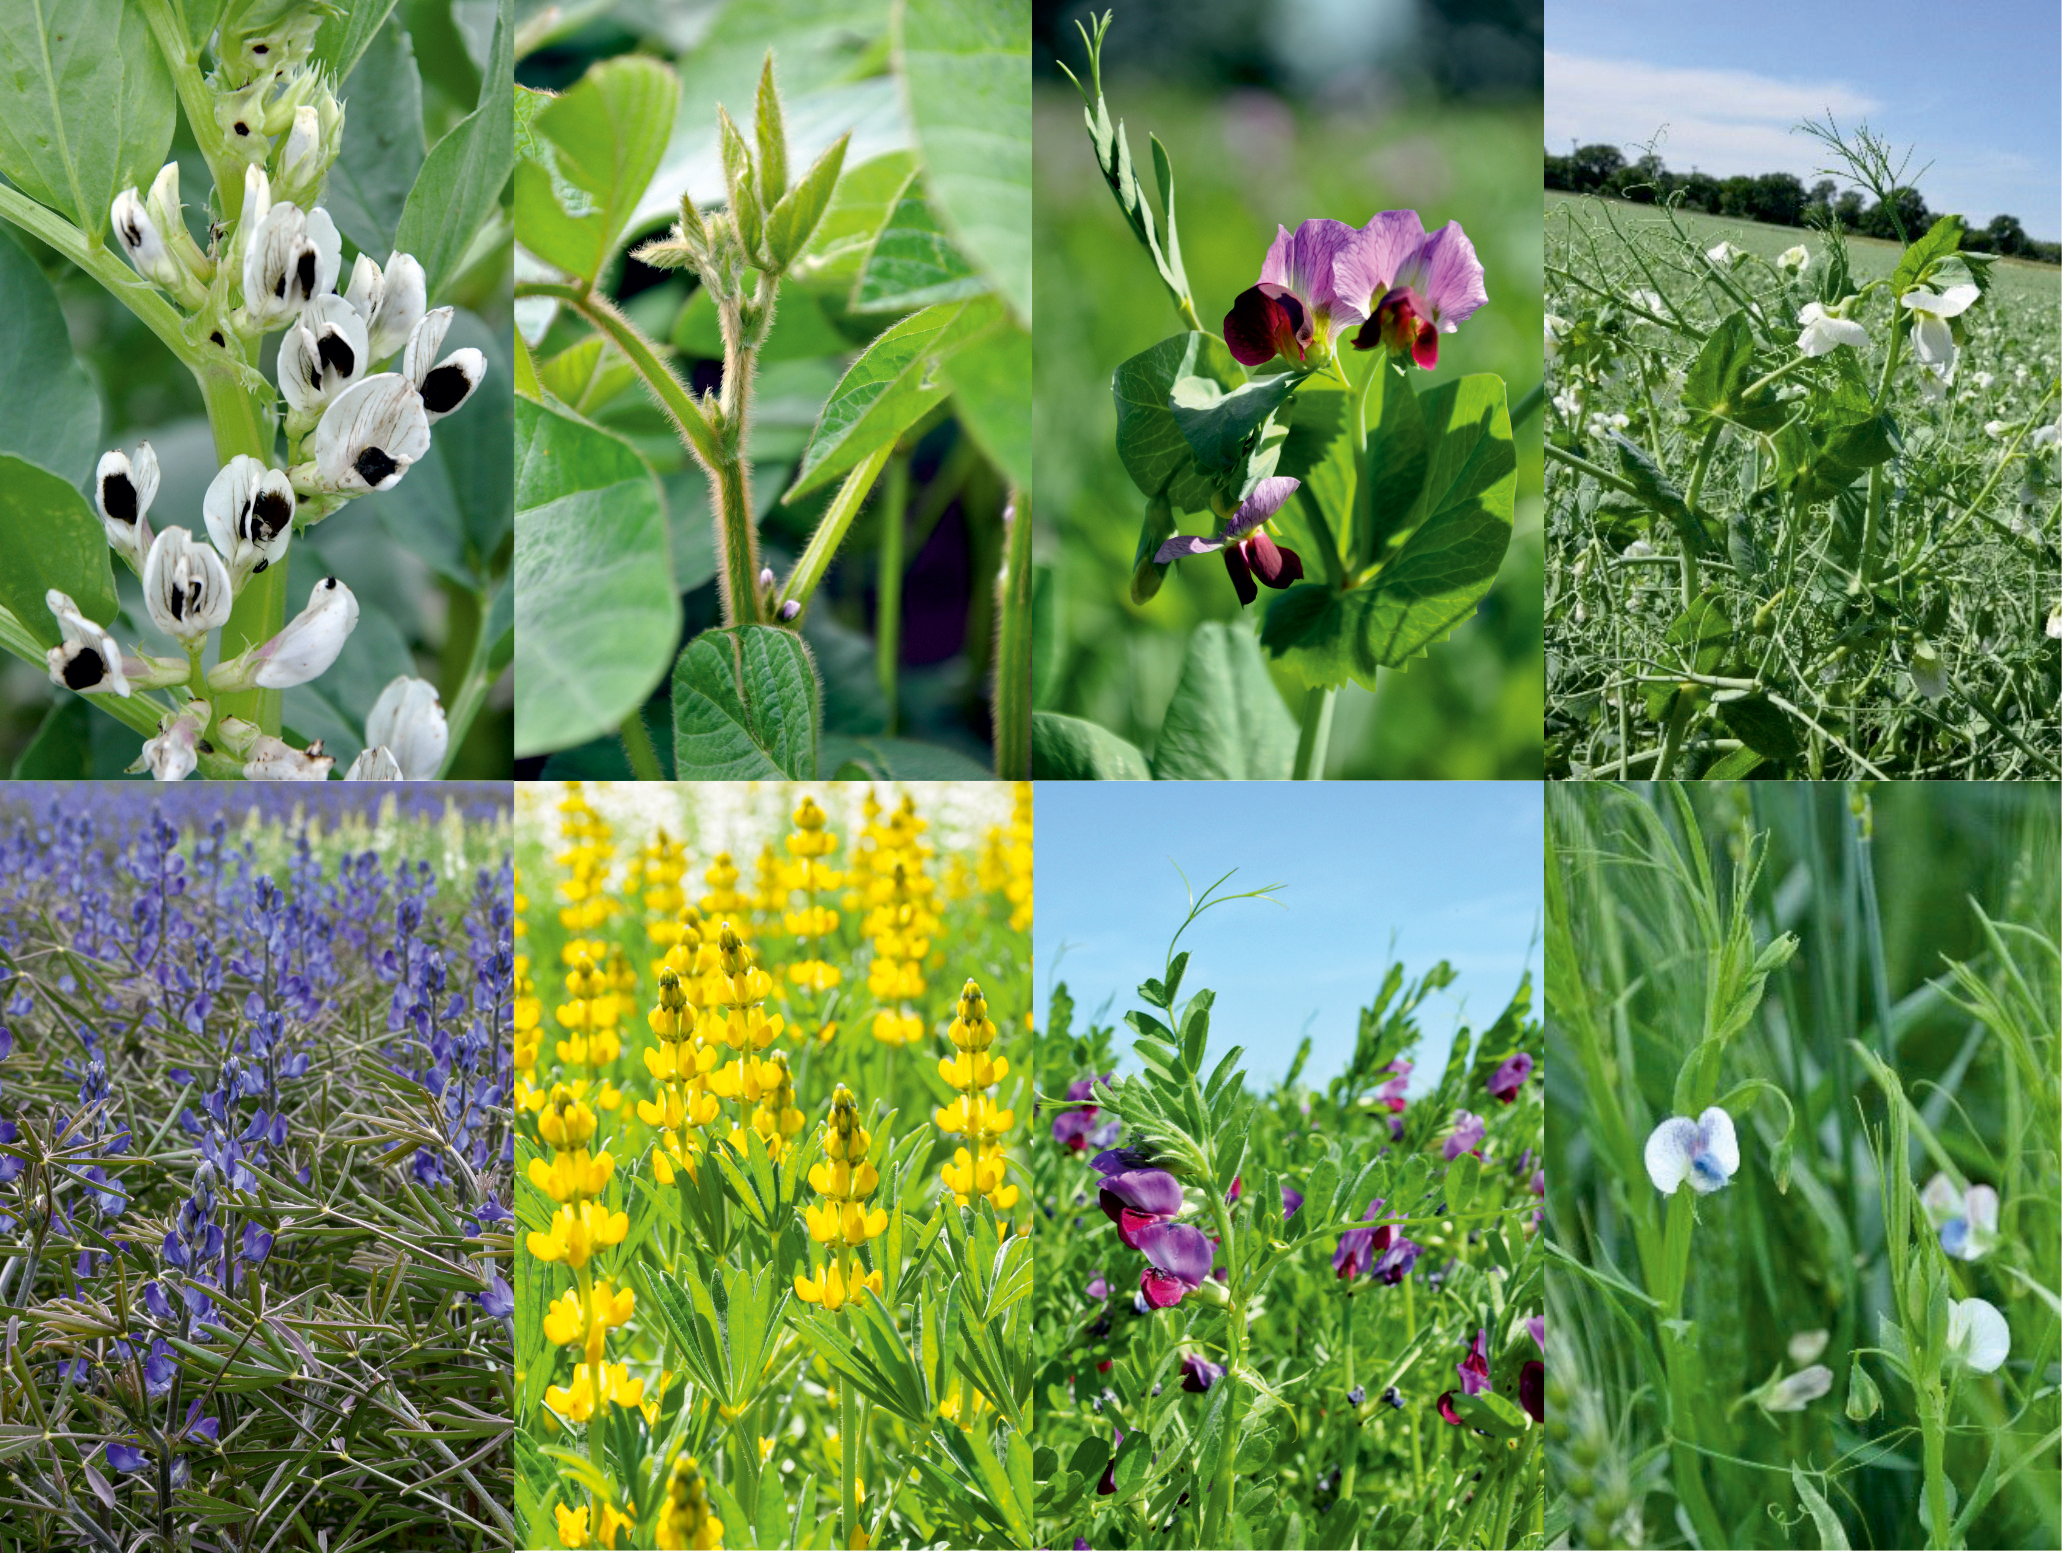 Blütenvielfalt von Körnerleguminosen: Ackerbohne, Sojabohne, Wintererbse, Sommererbse, Blaue Lupine, Gelbe Lupine, Saatwicke, Platterbse.